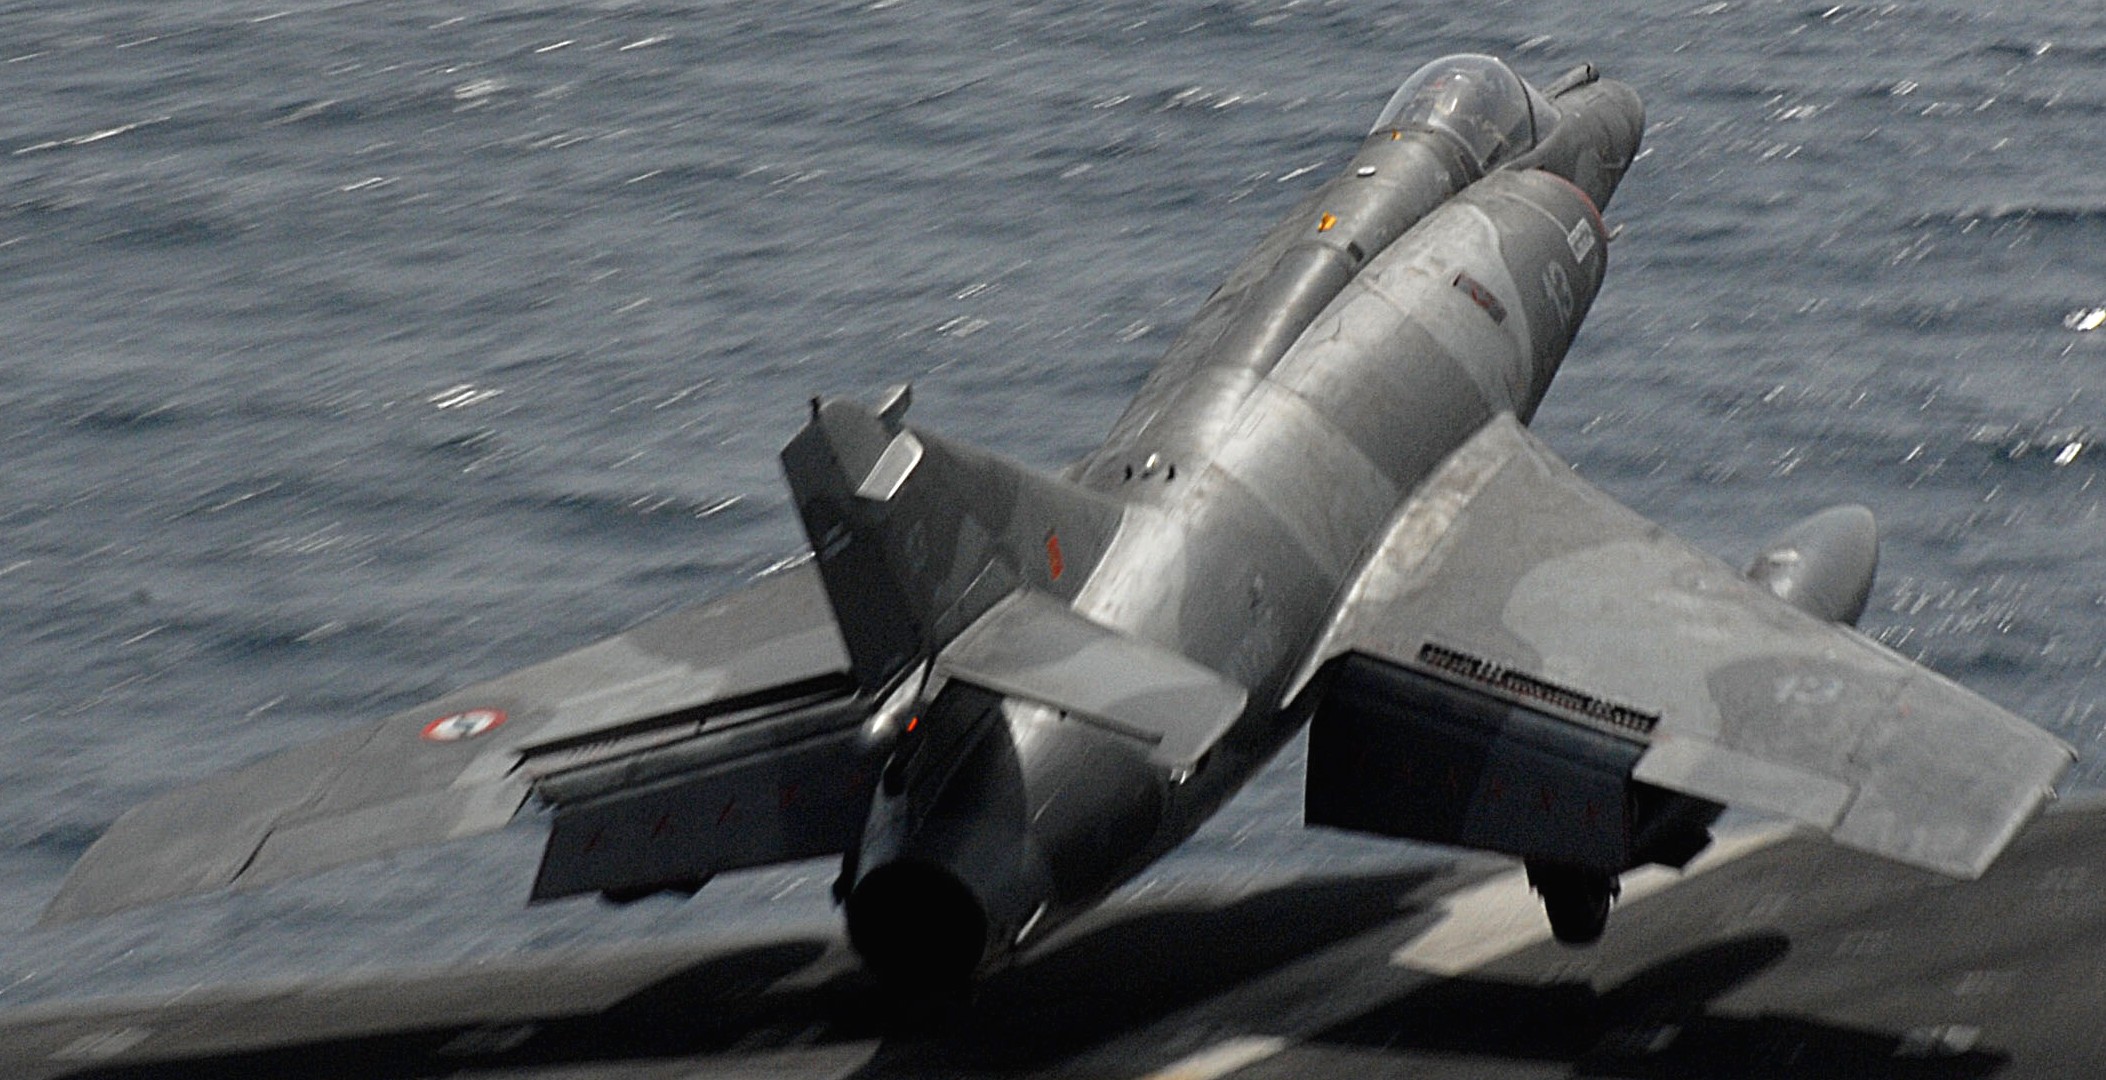 super etendard attack aircraft dassault french navy marine nationale flottille carrier 13-04